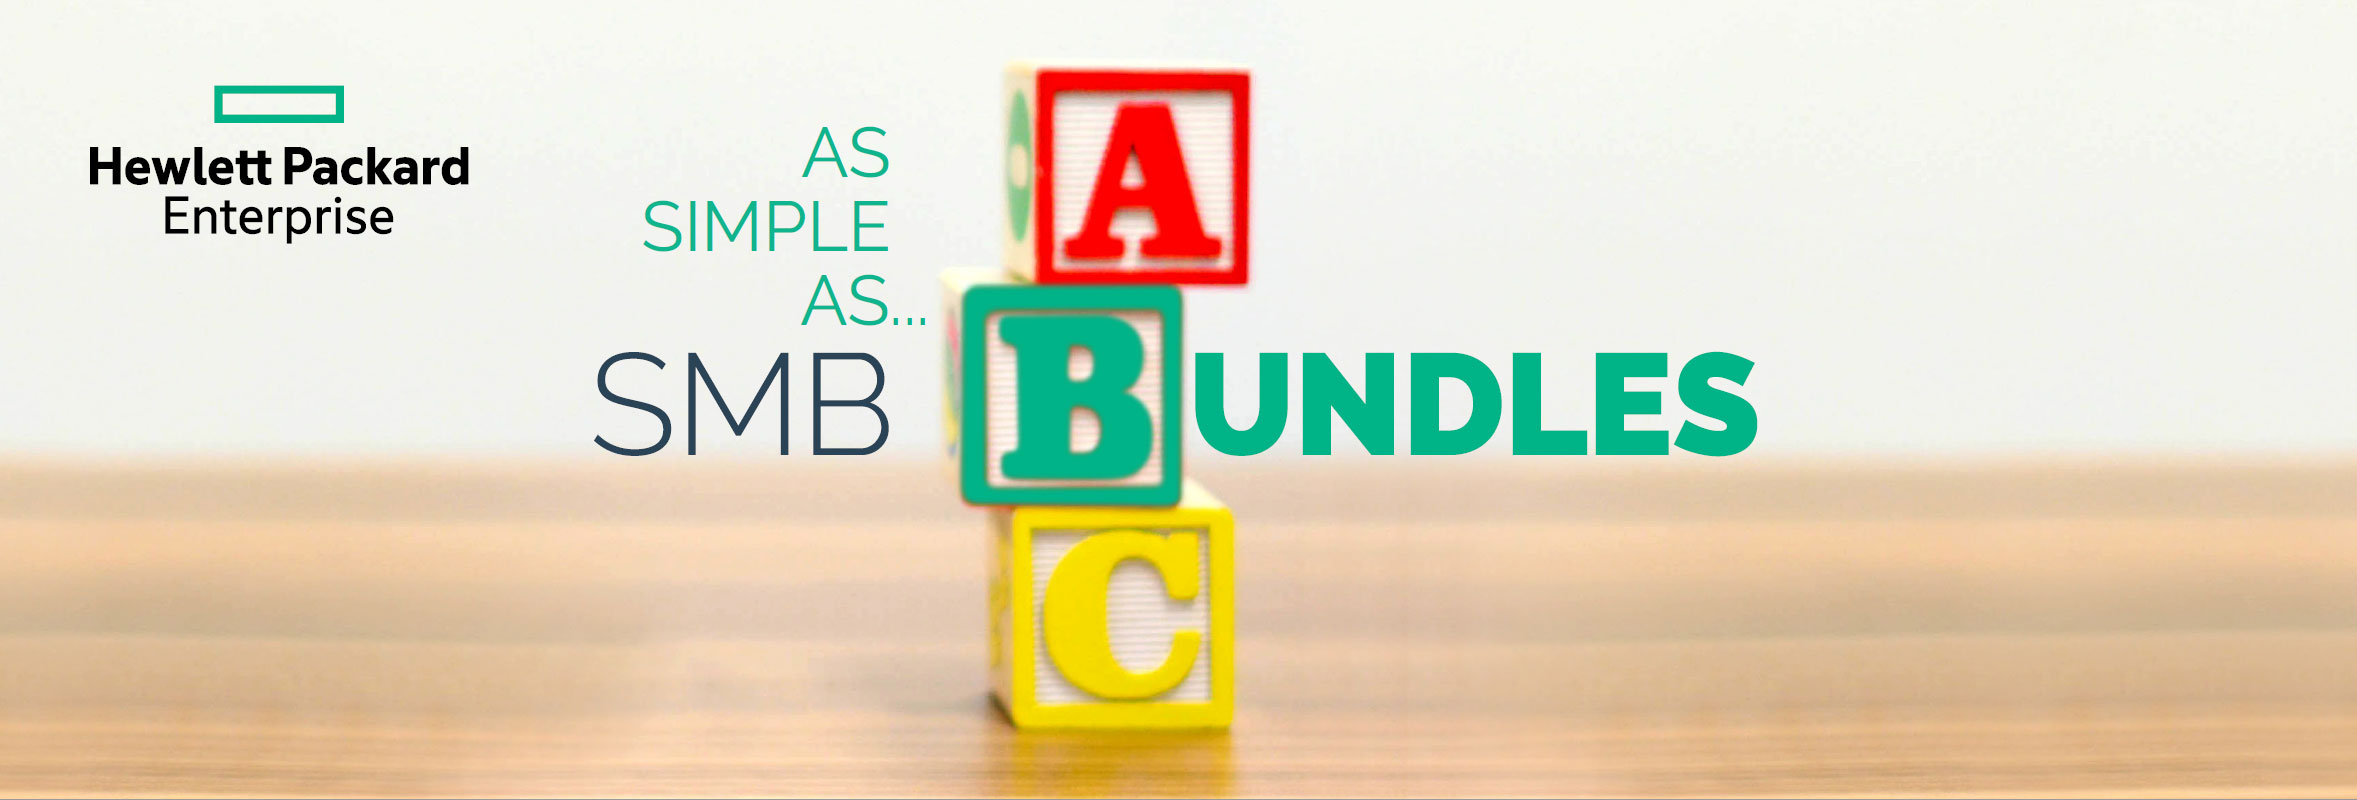 SMB Bundles! As Simple as ABC! 